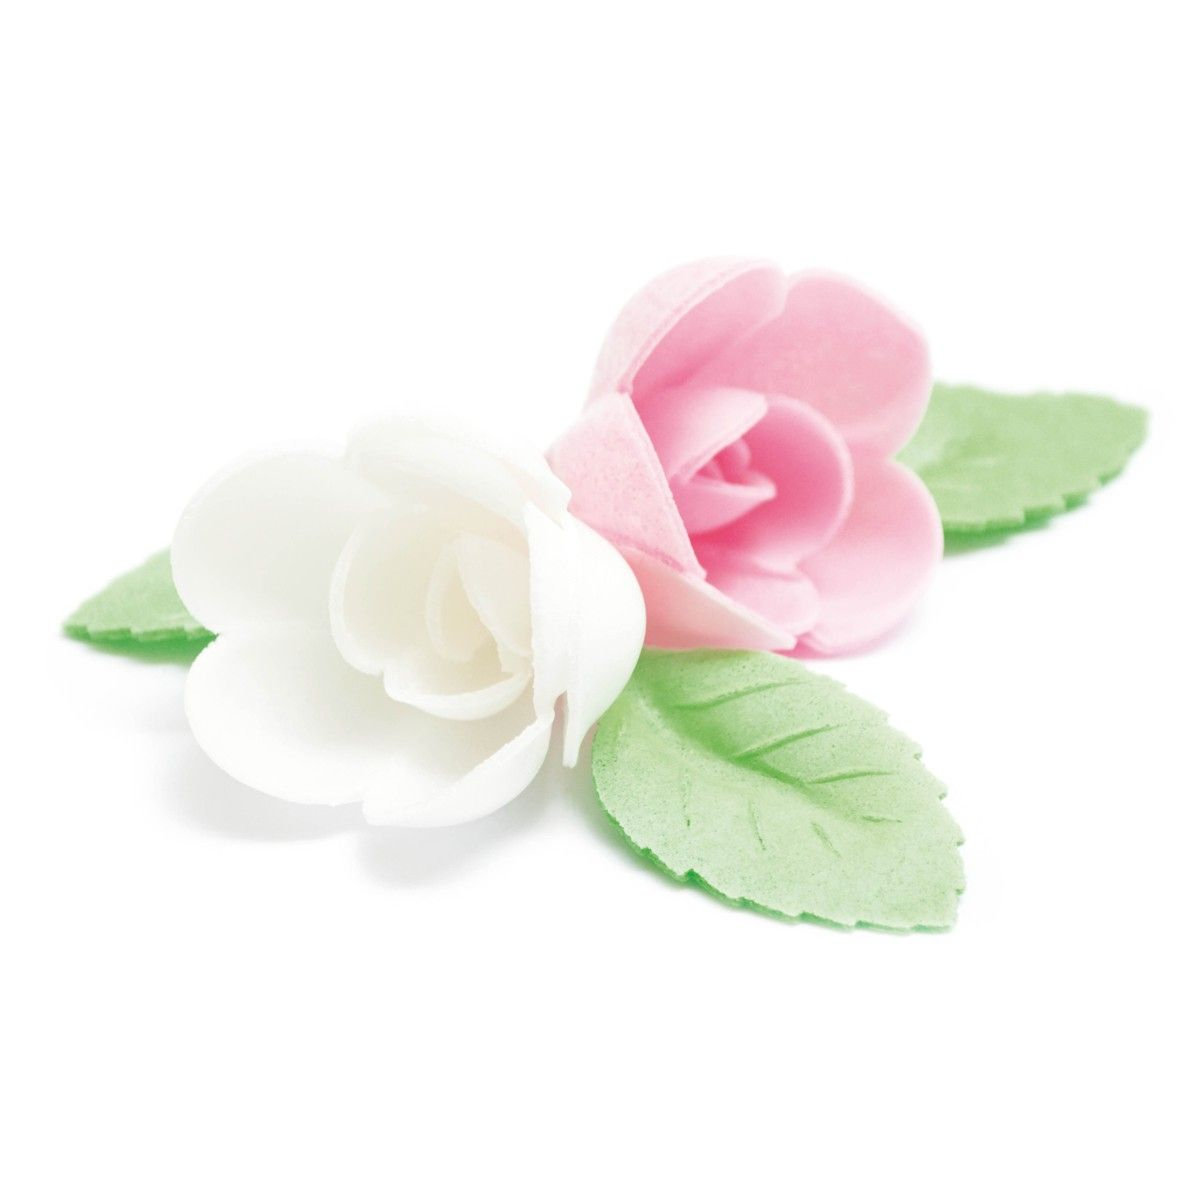 Decorações Comestíveis para Bolos - Flores Brancas, Rosas e Folhas 10 unidades